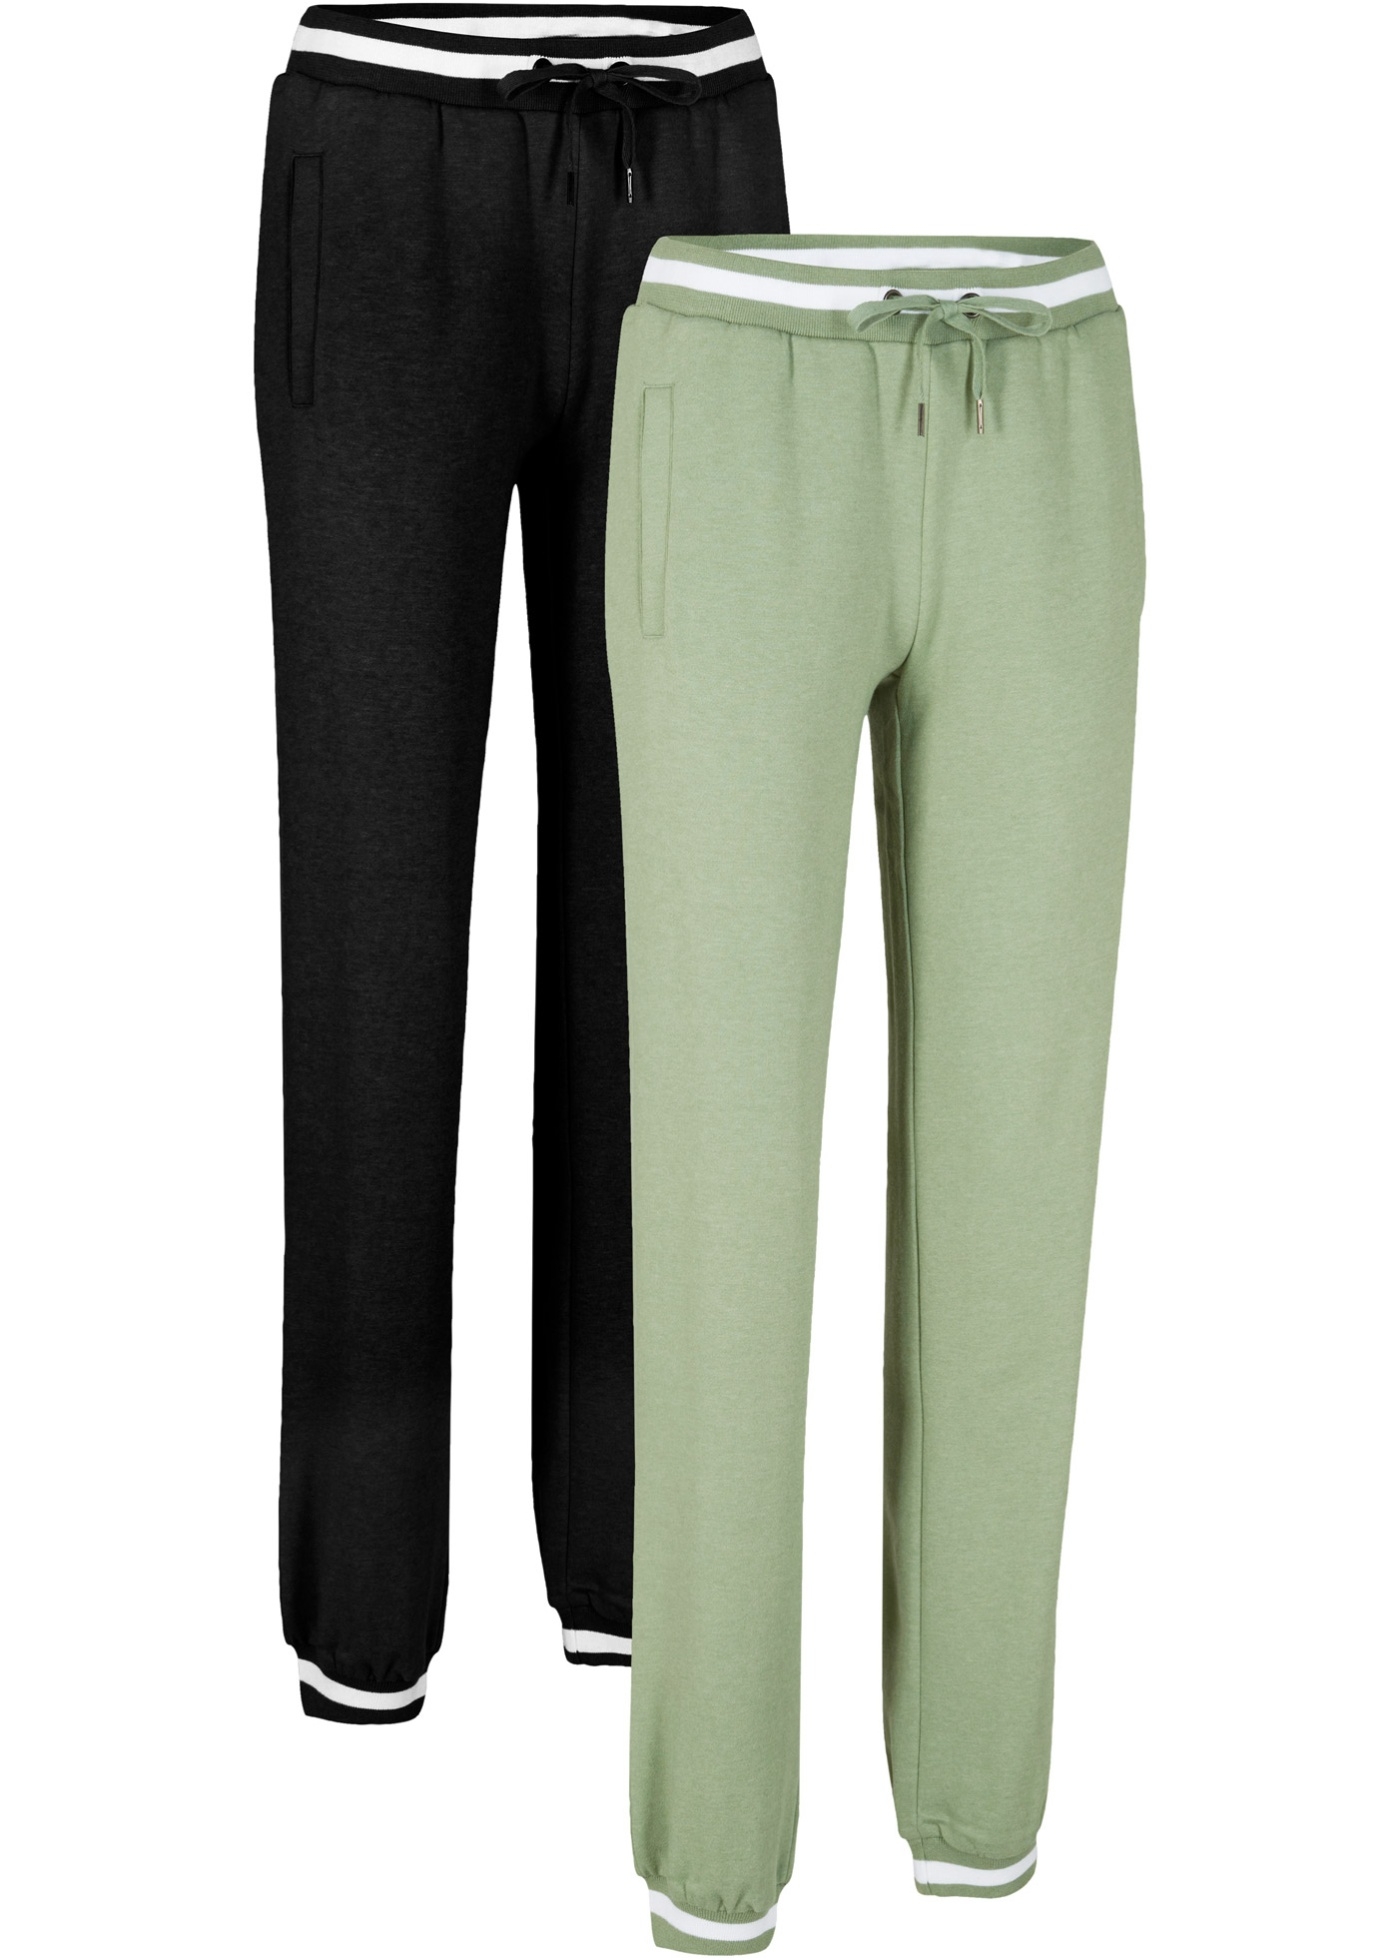 spodnie dresowe z kolekcji maite kelly (2 pary), długie, level 1